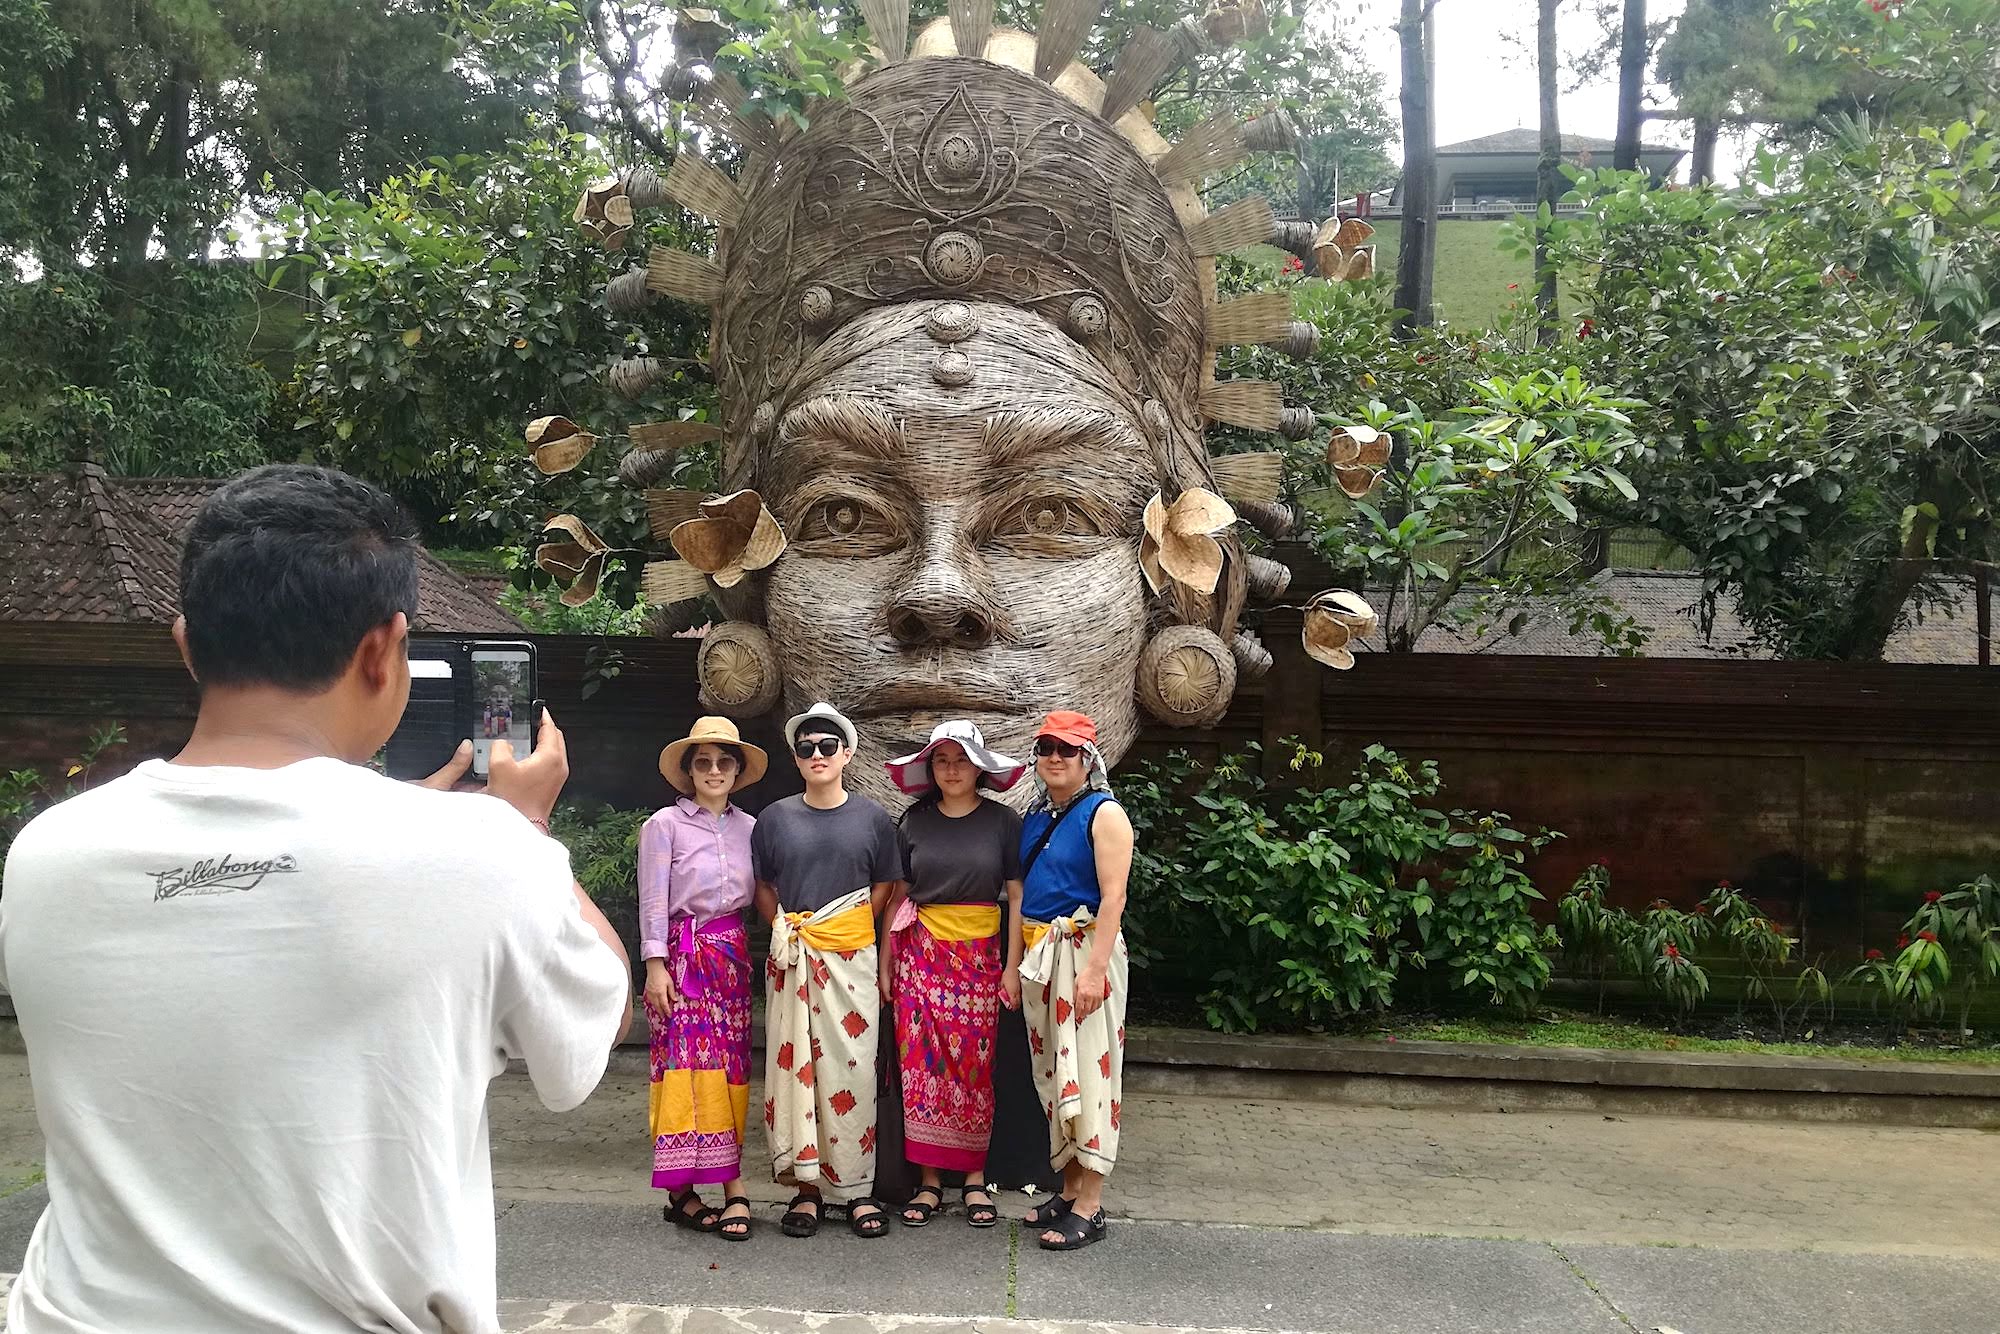  Patung kepala raksasa terbuat dari anyaman bambu menjadi objek menarik di Pura Tirta Empul, Gianyar, Bali | Foto: Anton Muhajir/Mongabay Indonesia 